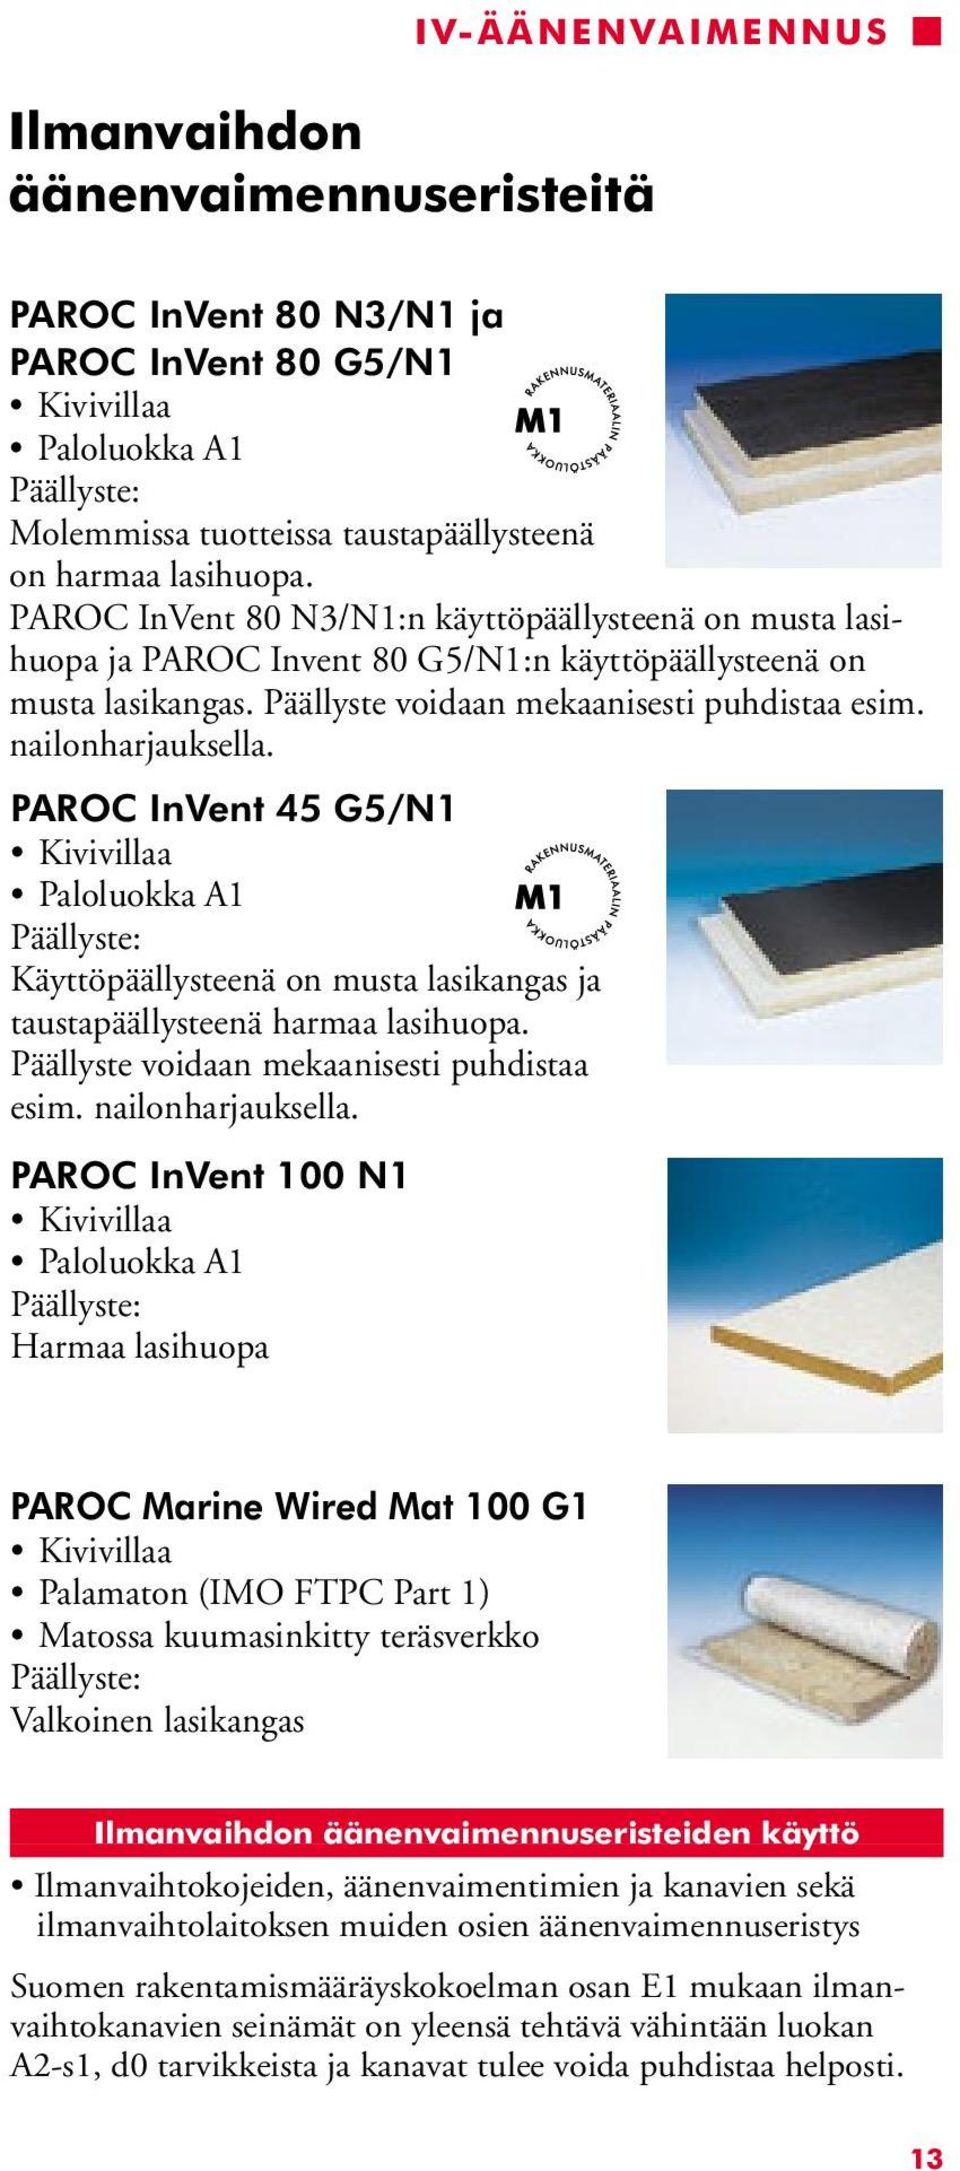 nailonharjauksella. PAROC InVent 45 G5/N1 Paloluokka A1 Päällyste: Käyttöpäällysteenä on musta lasikangas ja taustapäällysteenä harmaa lasihuopa. Päällyste voidaan mekaanisesti puhdistaa esim.